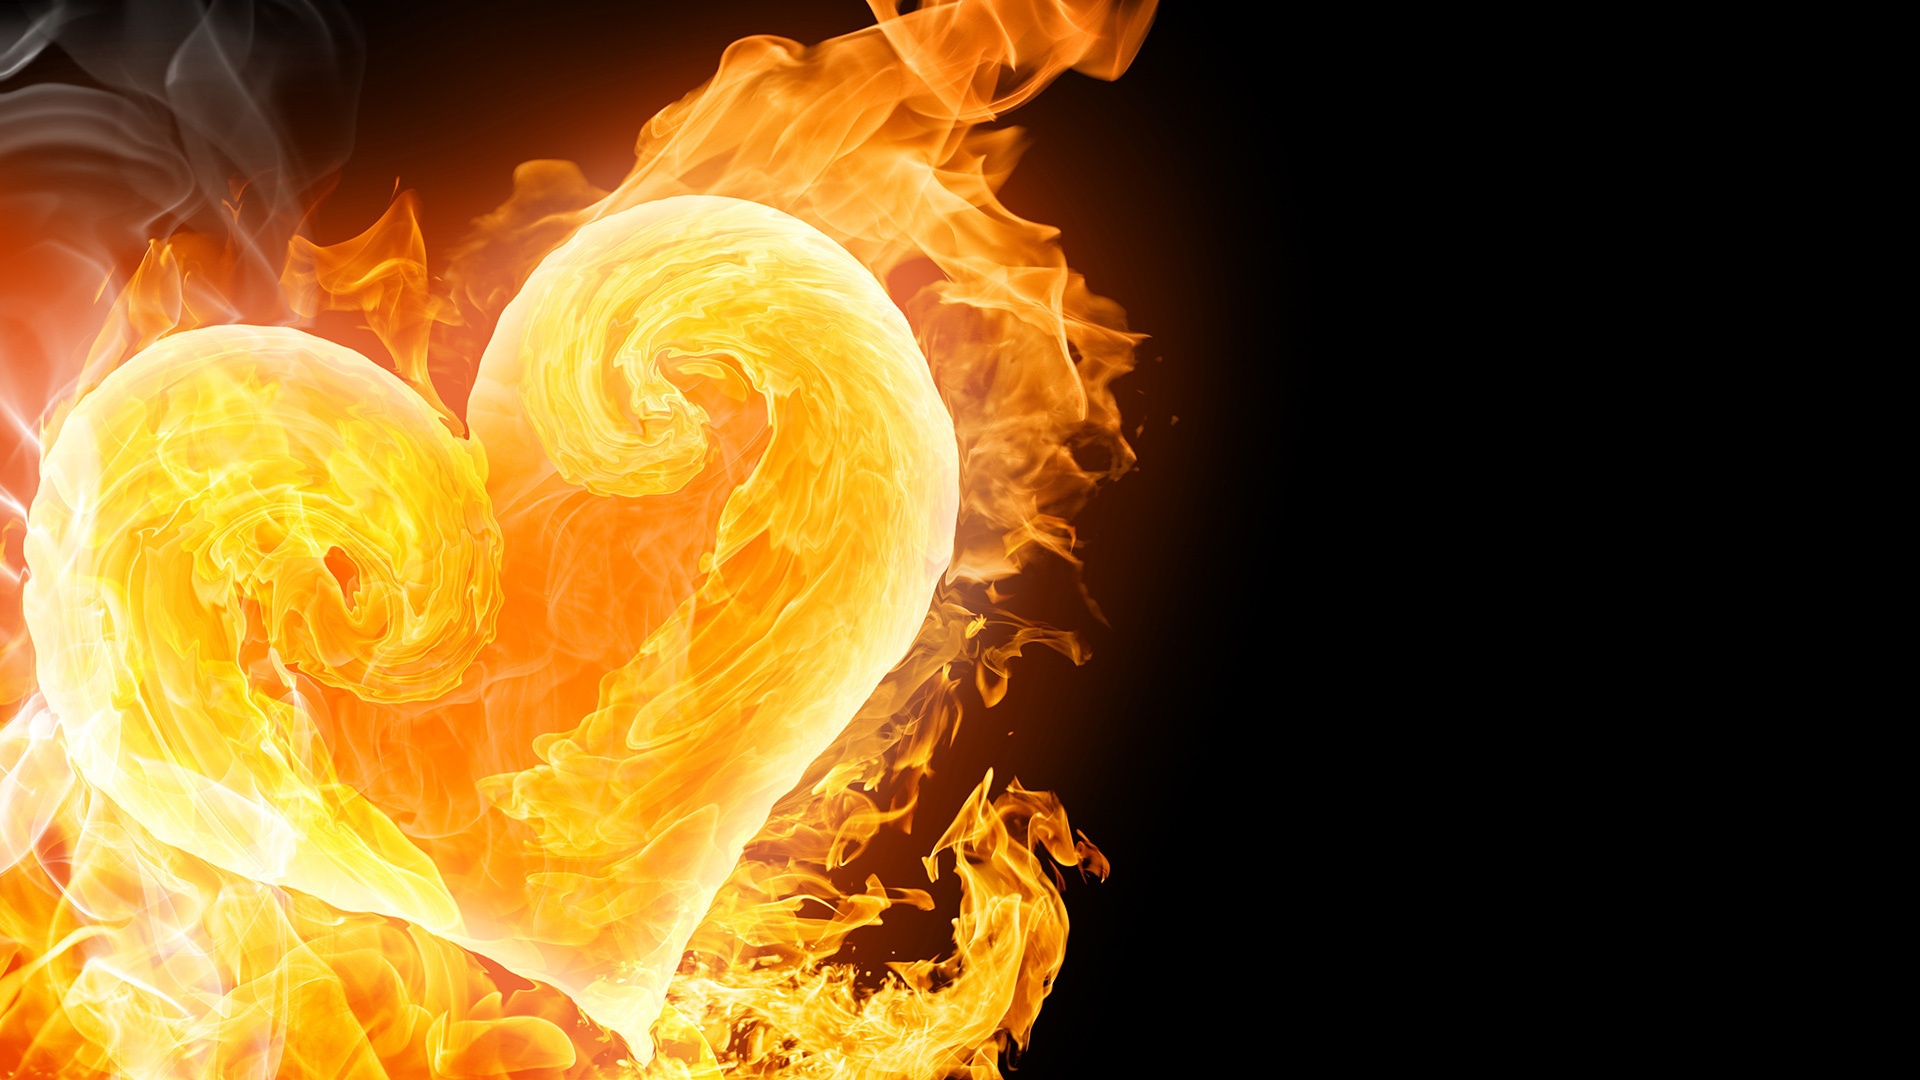 Fire heart wallpaper